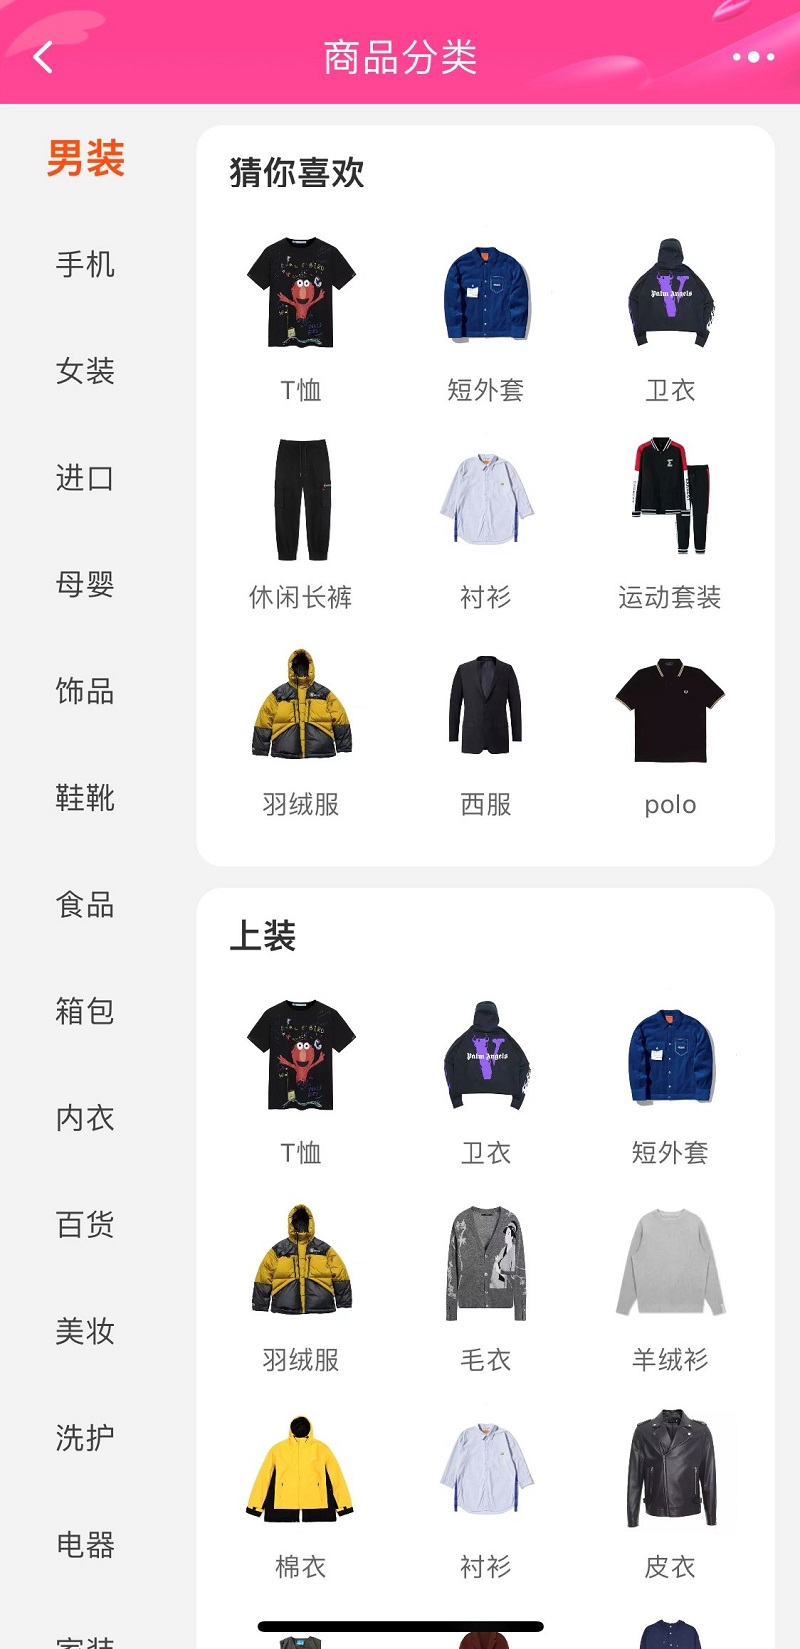 Danh mục sản phẩm trên Taobao